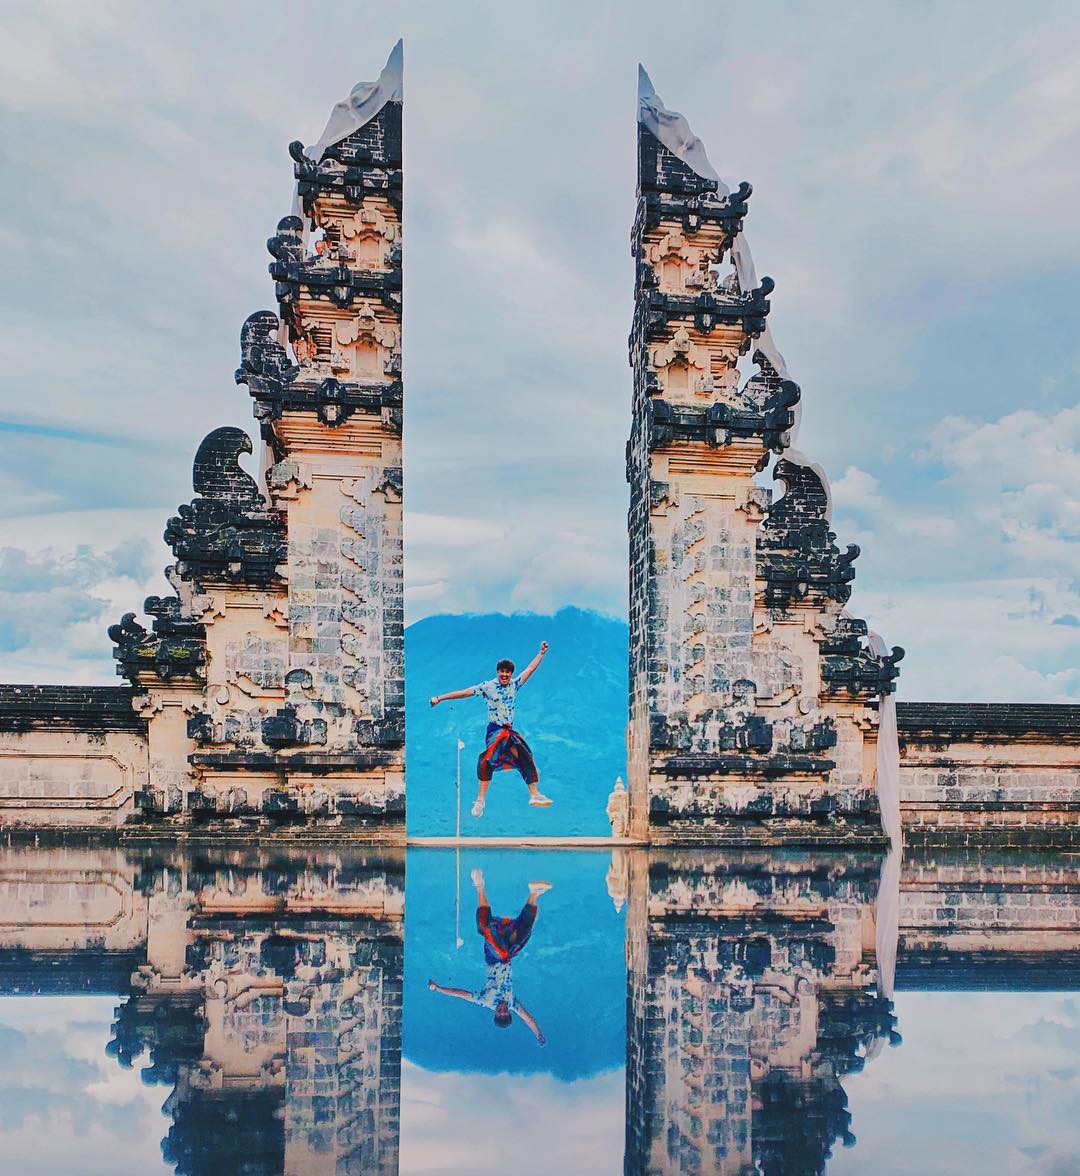 Ảnh cổng thiên đường Bali - điểm check in cực ảo không thể bỏ qua